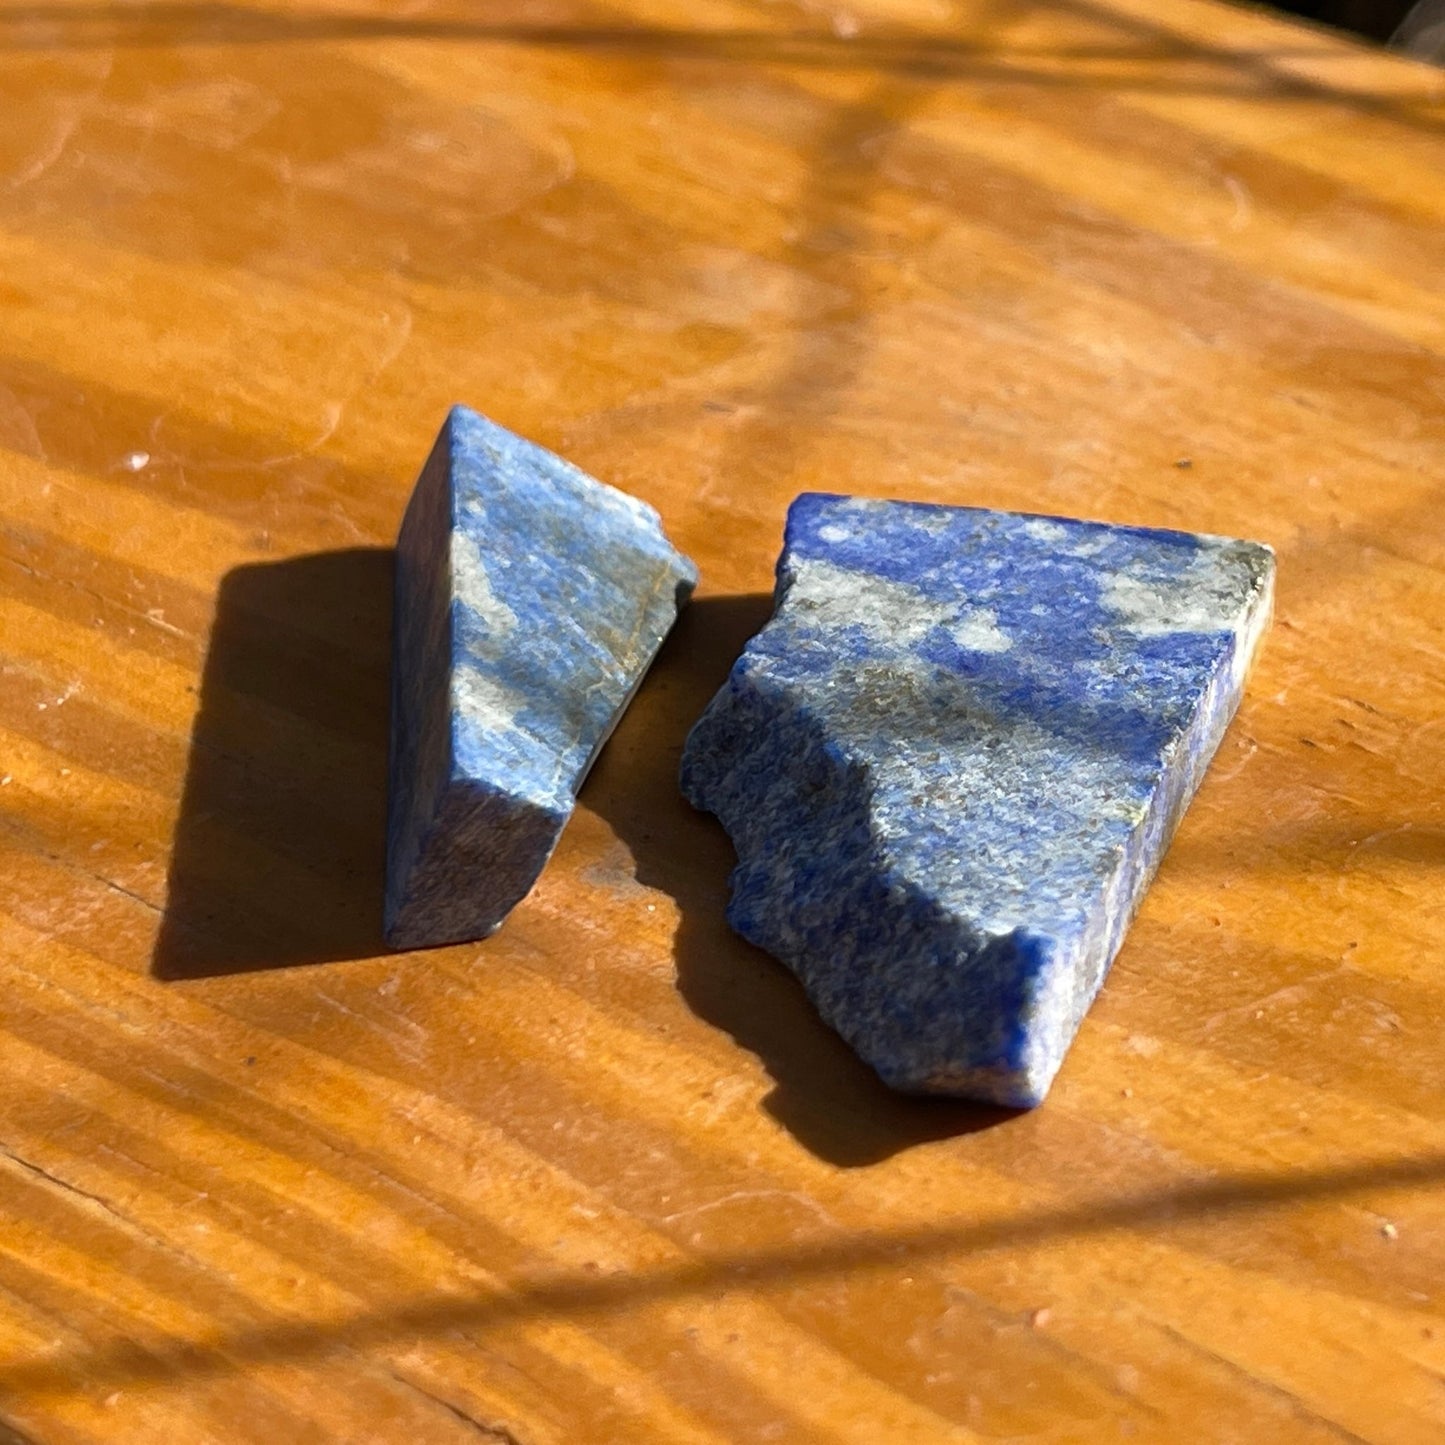 Lapis Lazuli - Healing Stone Beings